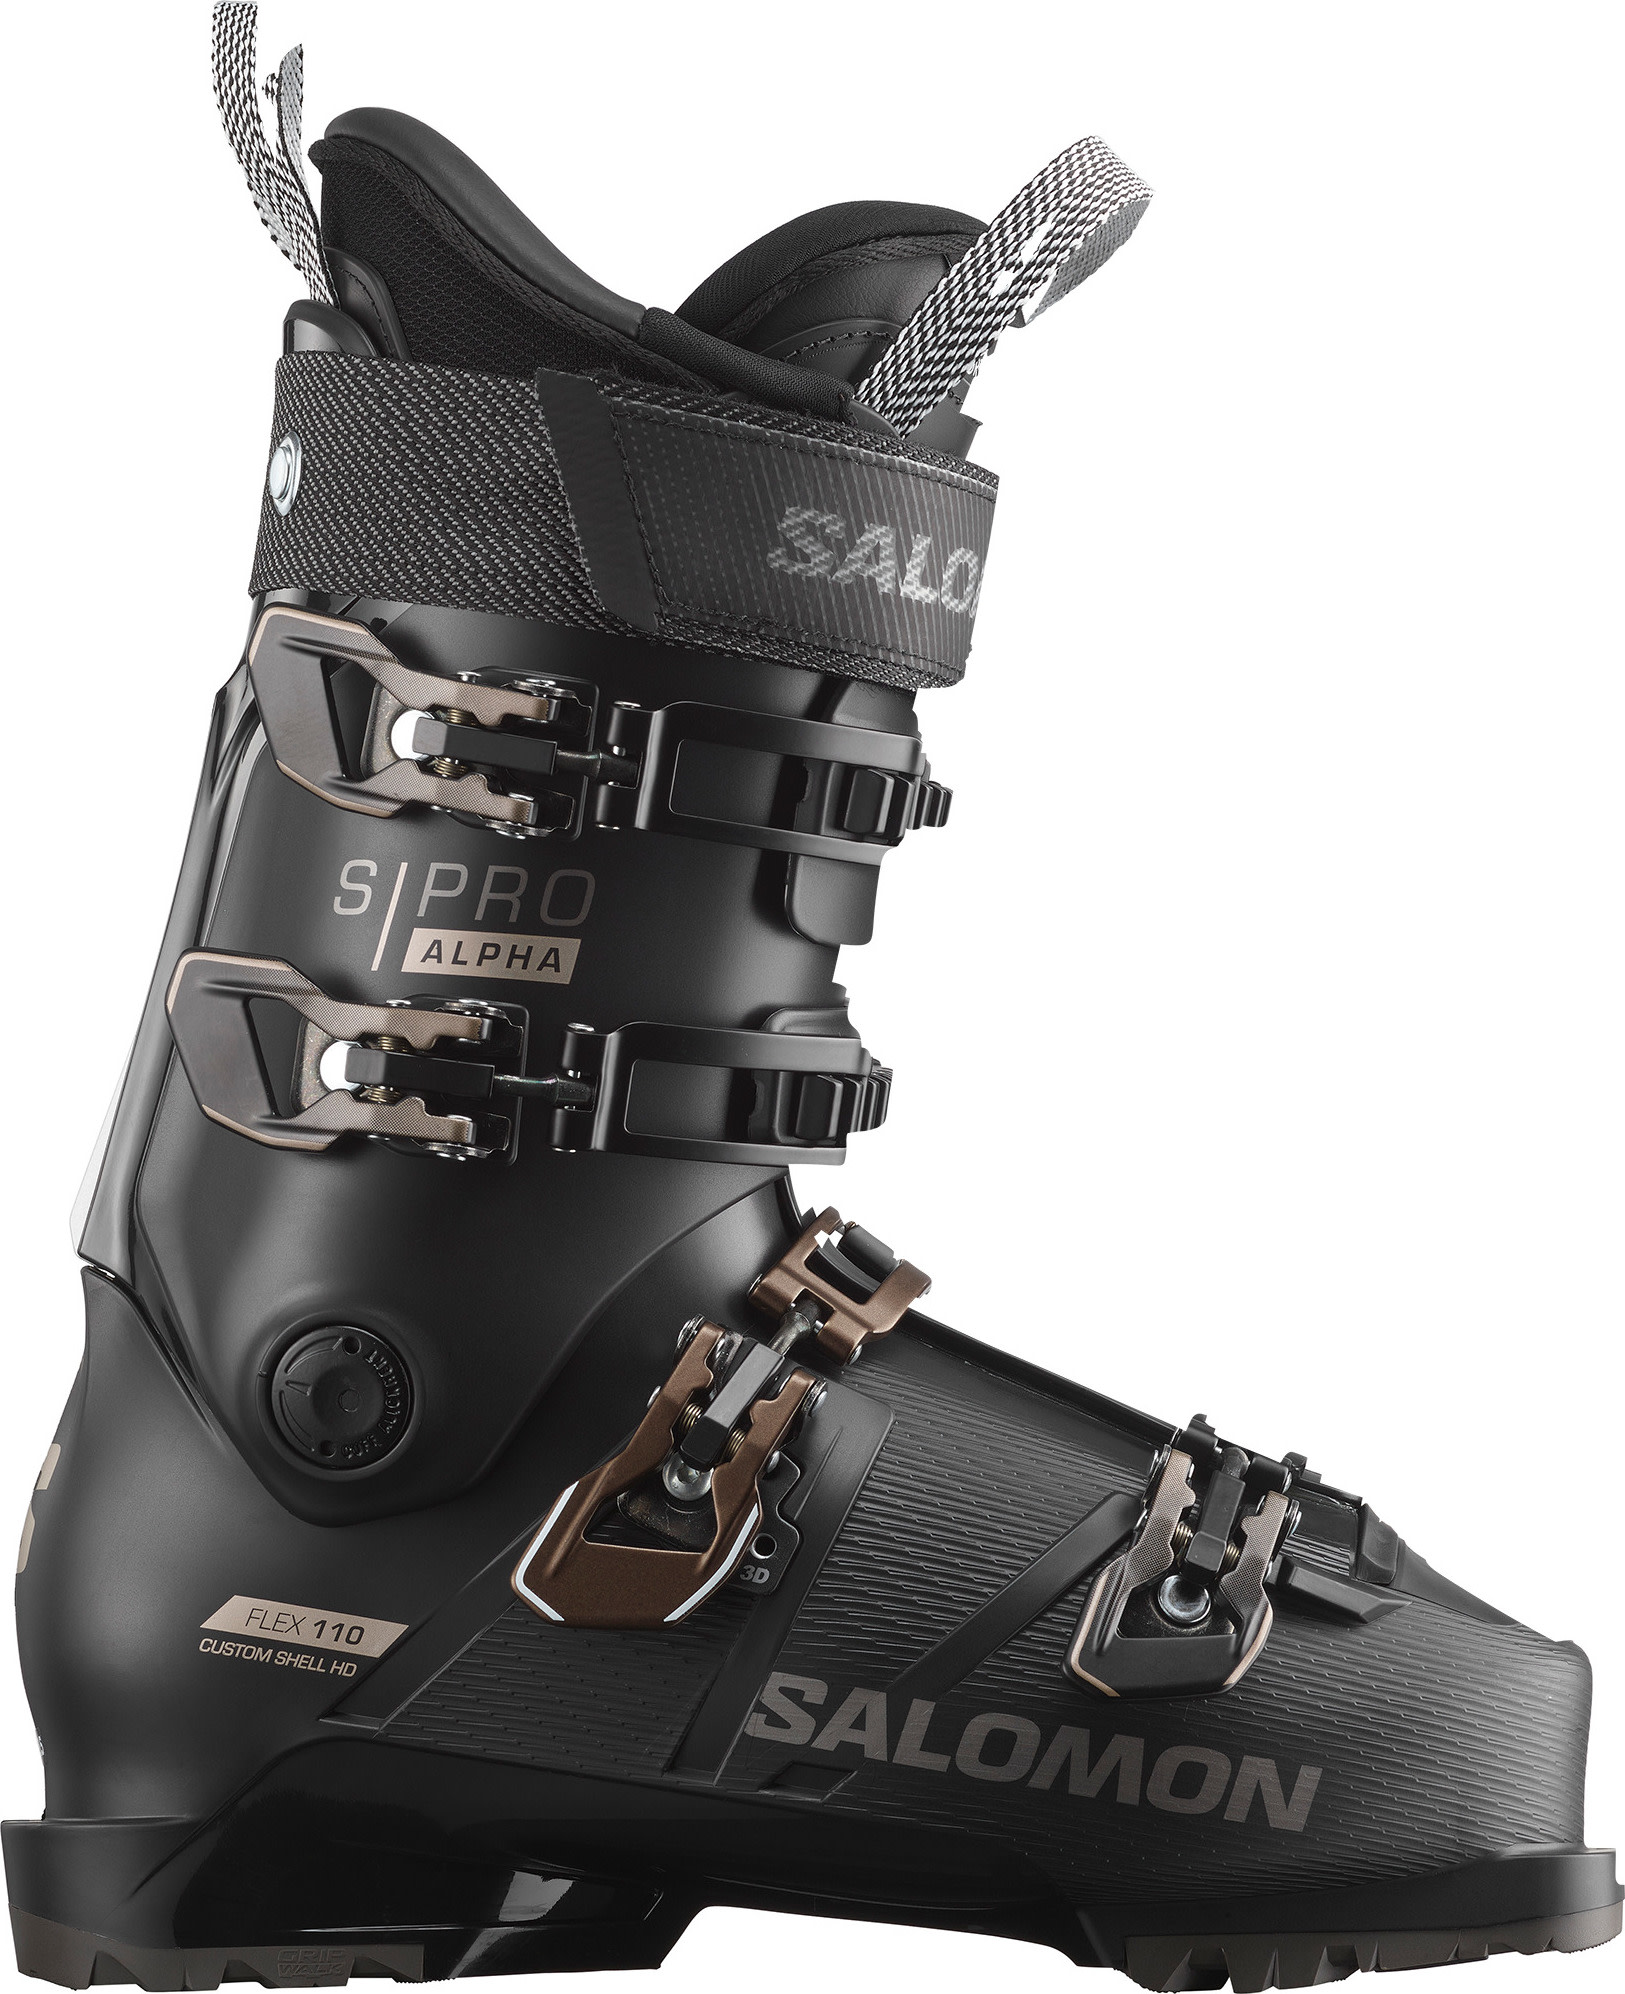 Salomon Men’s S/Pro Alpha 110 Black/Titanium Metal/